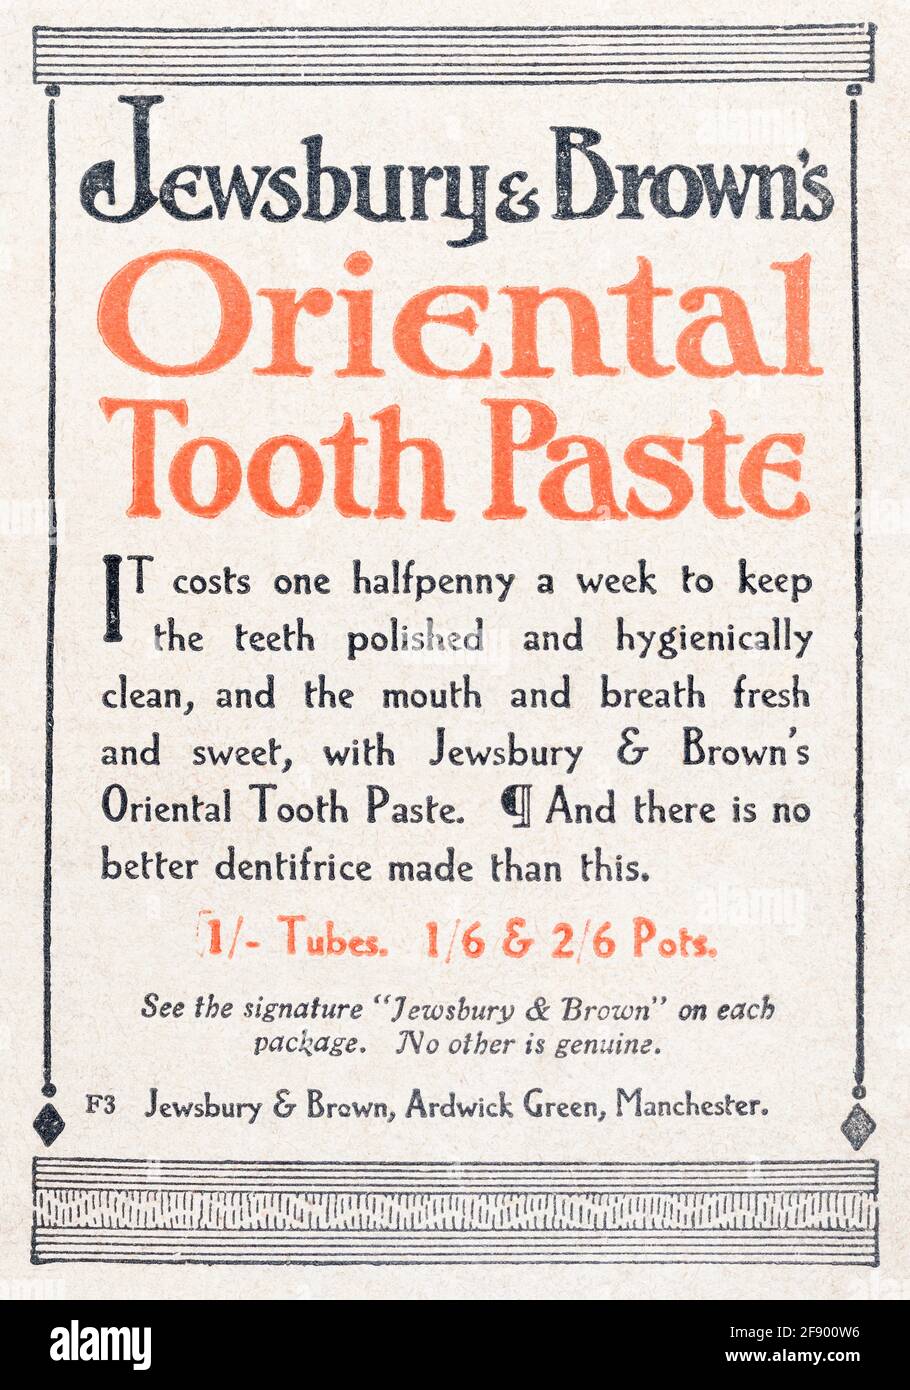 Alte Vintage-Zeitungsdruckzeitung des edwardianischen Magazins Jewsbury & Brown's Zahnpasta-Werbespot aus dem Jahr 1912 - vor dem Anbruch der Werbestandards. Stockfoto